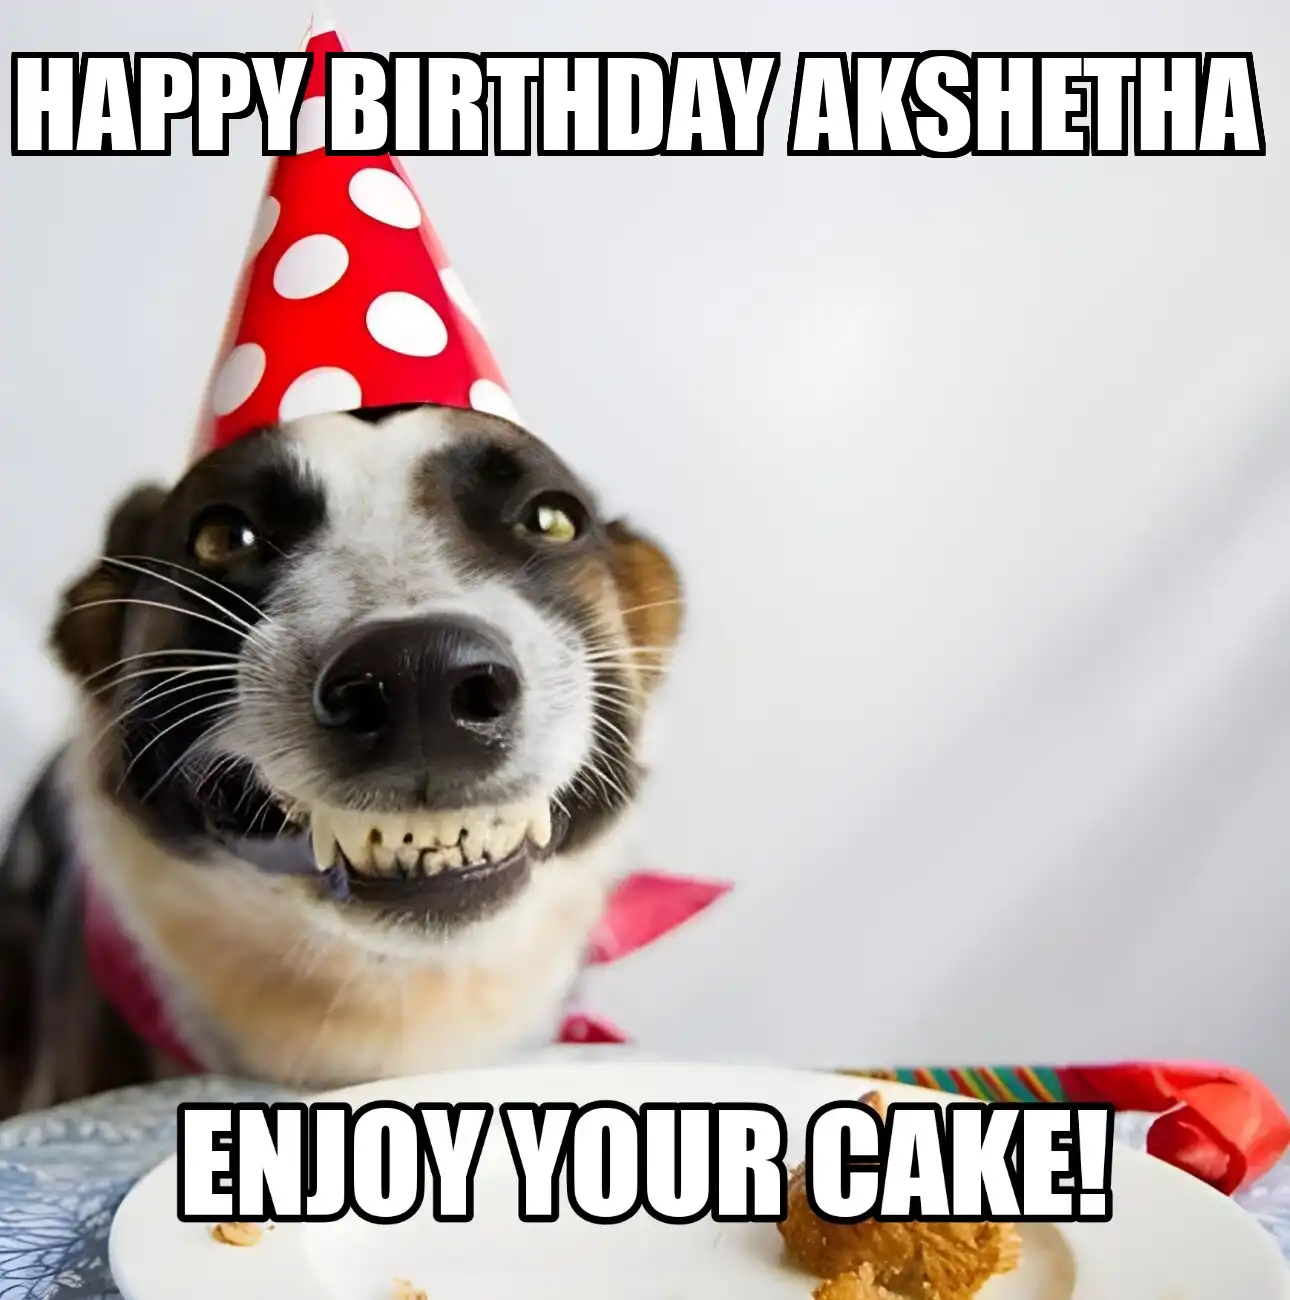 Happy Birthday Akshetha Enjoy Your Cake Dog Meme